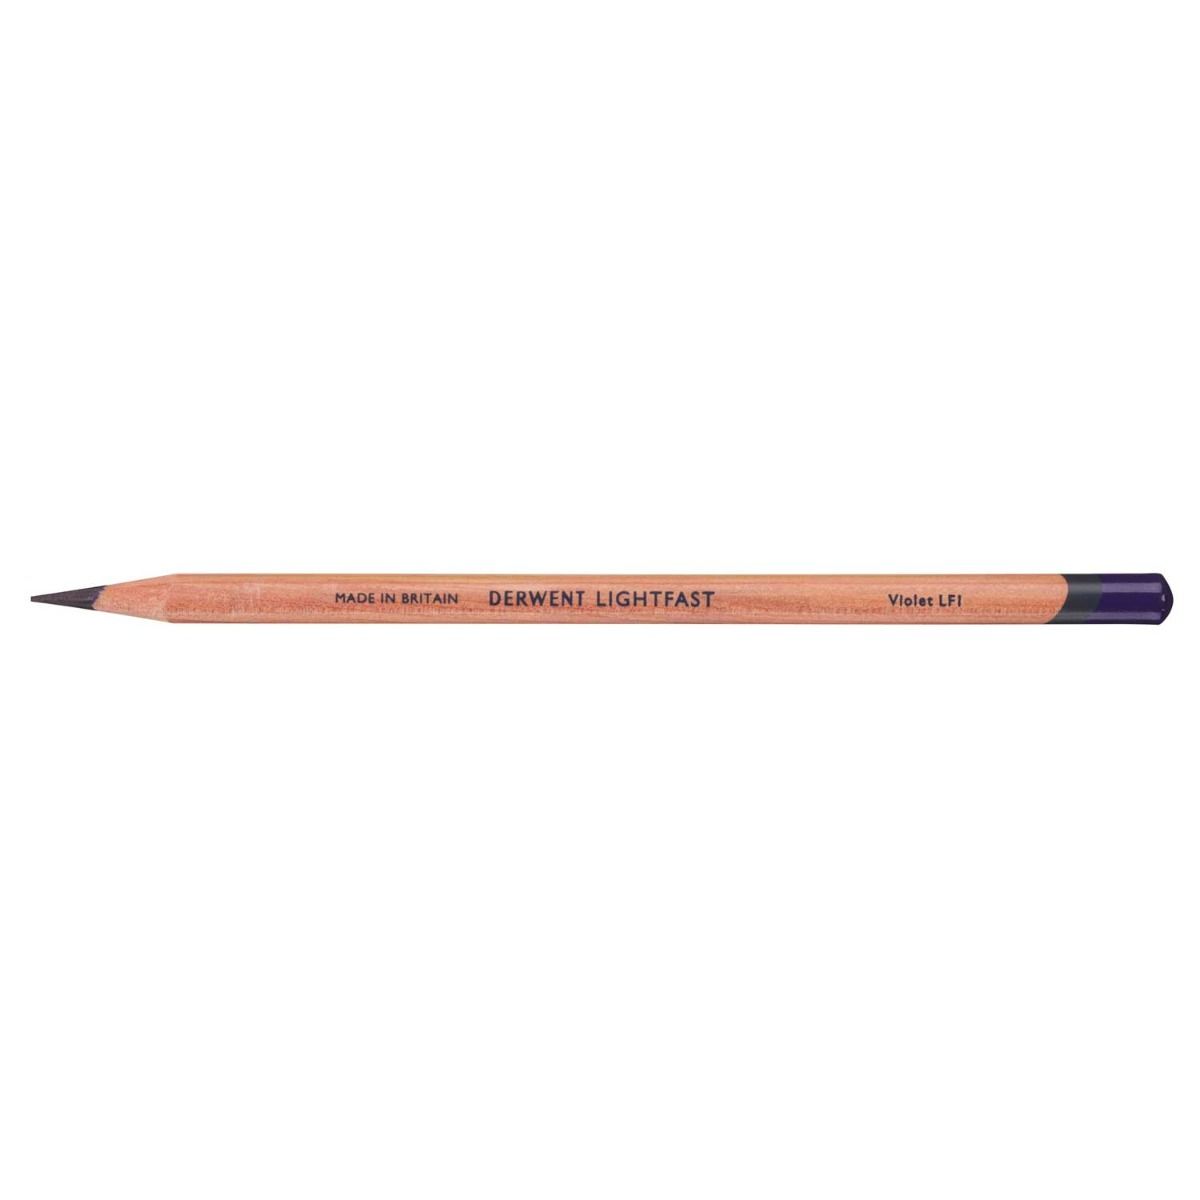 Derwent Lightfast Pencil Colour: Violet